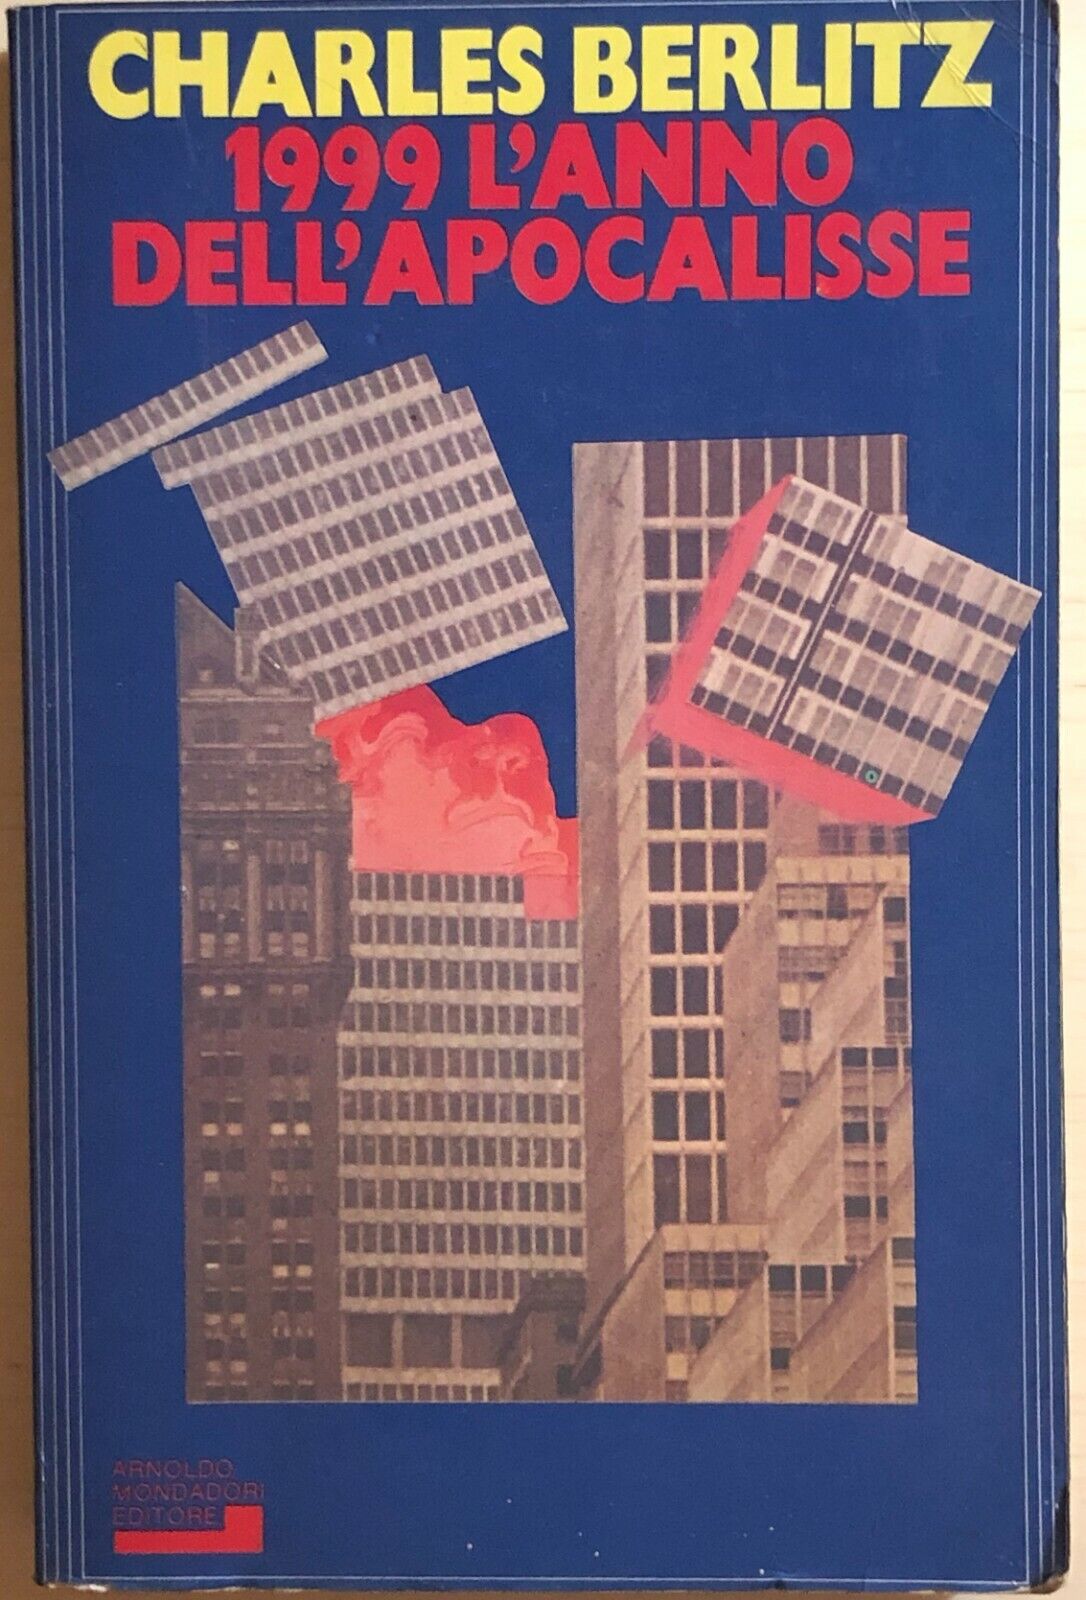 1999 l'anno dell'apocalisse di Charles Berlitz, 1982, Arnoldo Mondadori